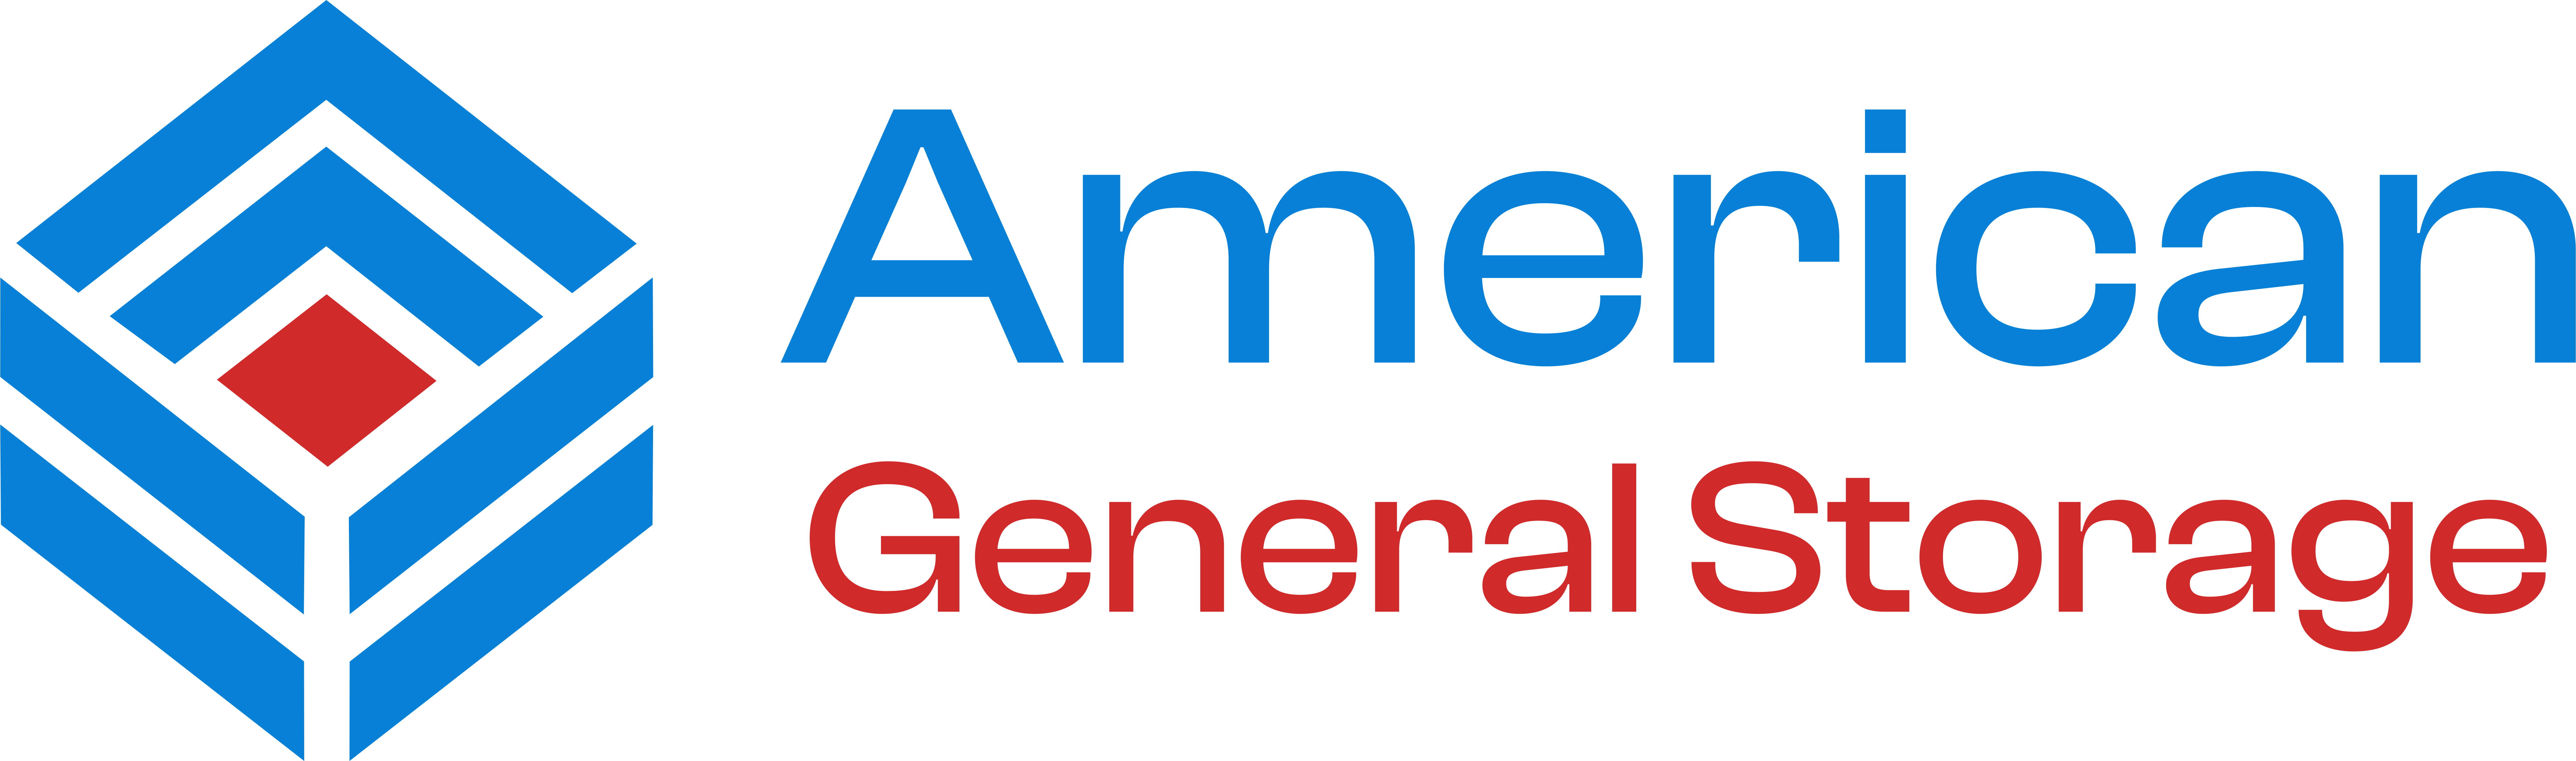 American General Storage